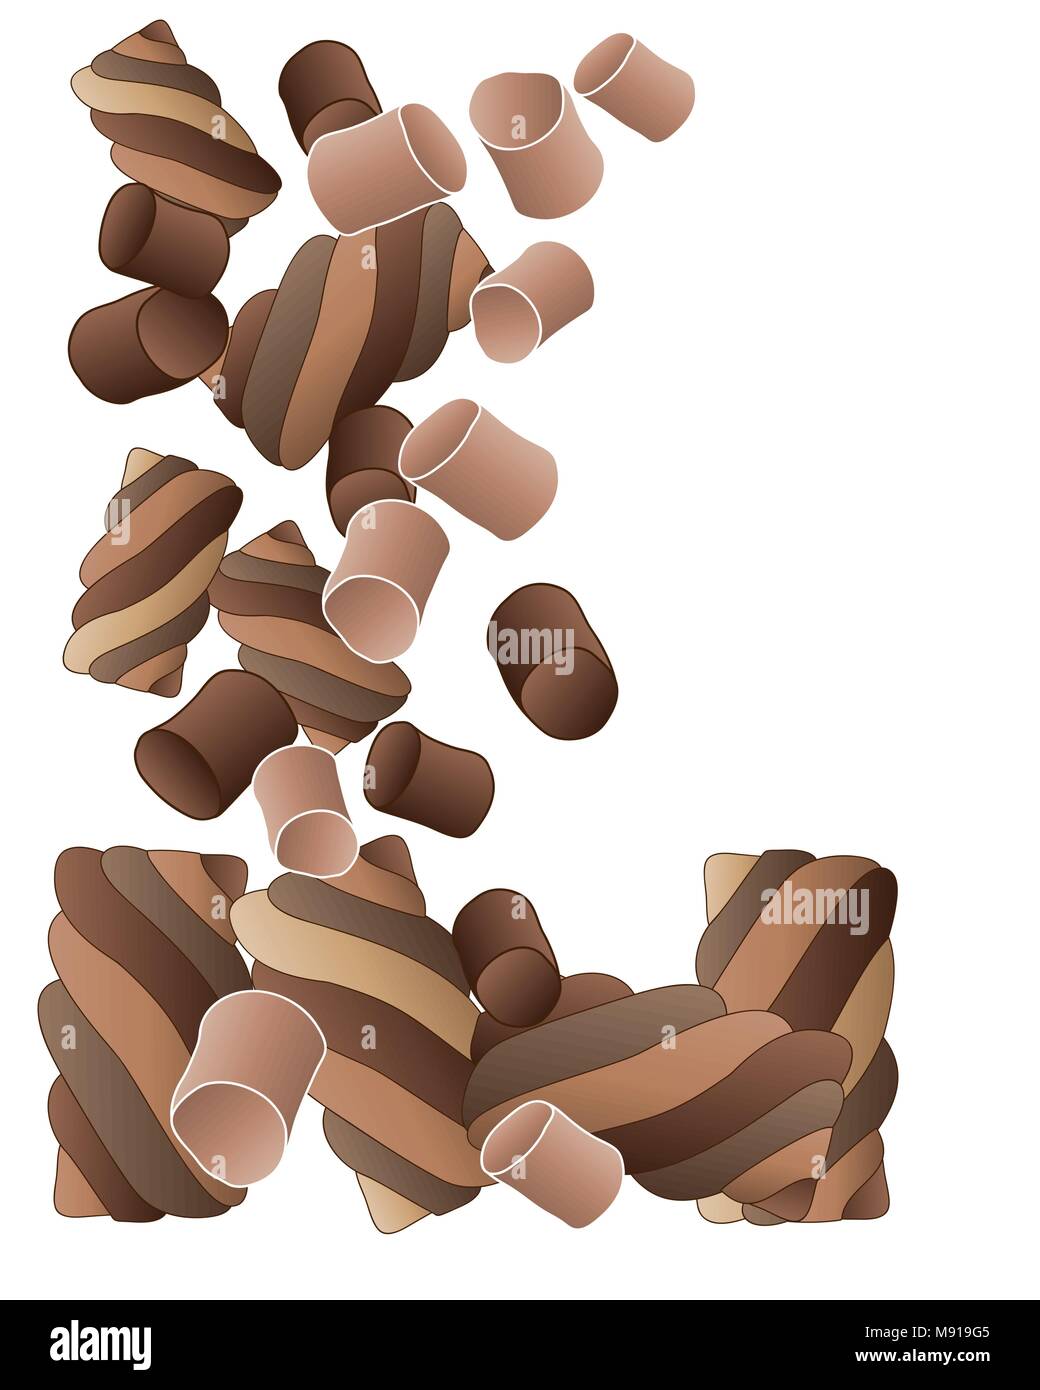 Ein Vektor Abbildung im EPS 10 Format der schokokuss Süßigkeit in glatt und Wendungen tumbling auf weißem Hintergrund Stock Vektor